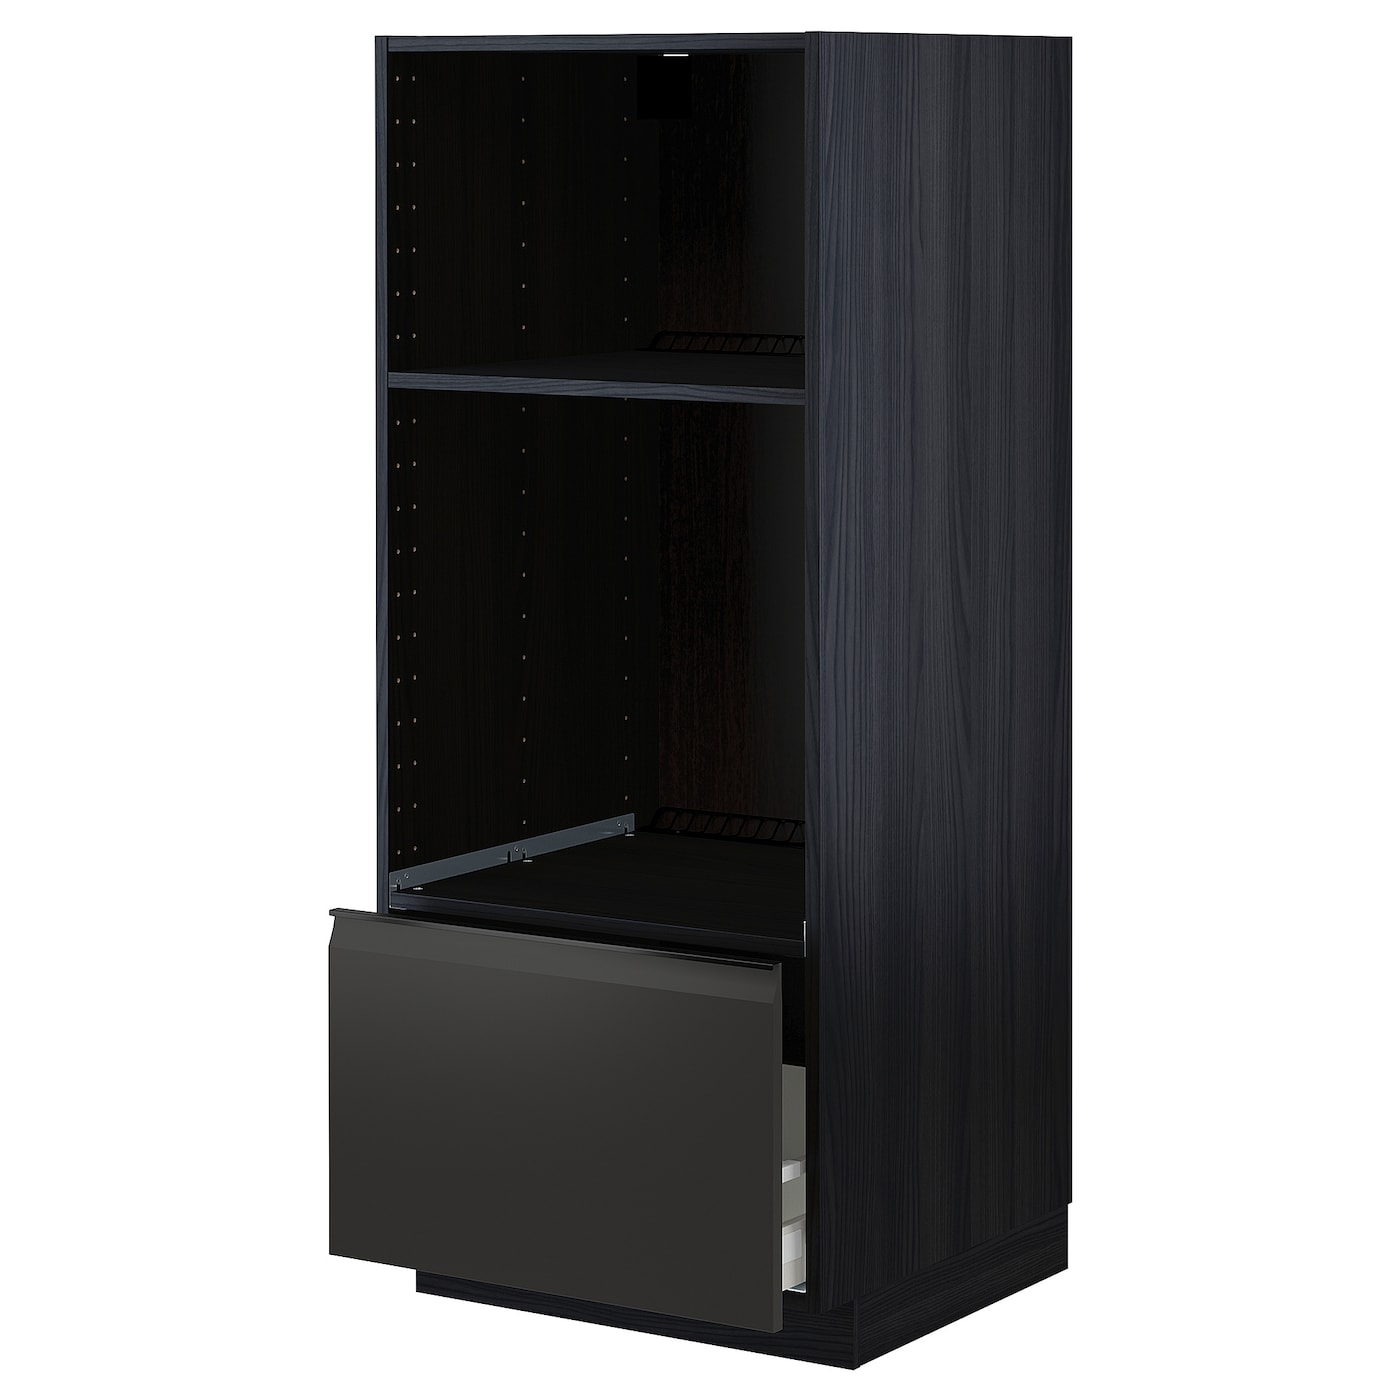 Напольный шкаф с выдвижным ящиком  - IKEA METOD MAXIMERA, 148x61,6x60см, черный, МЕТОД МАКСИМЕРА ИКЕА